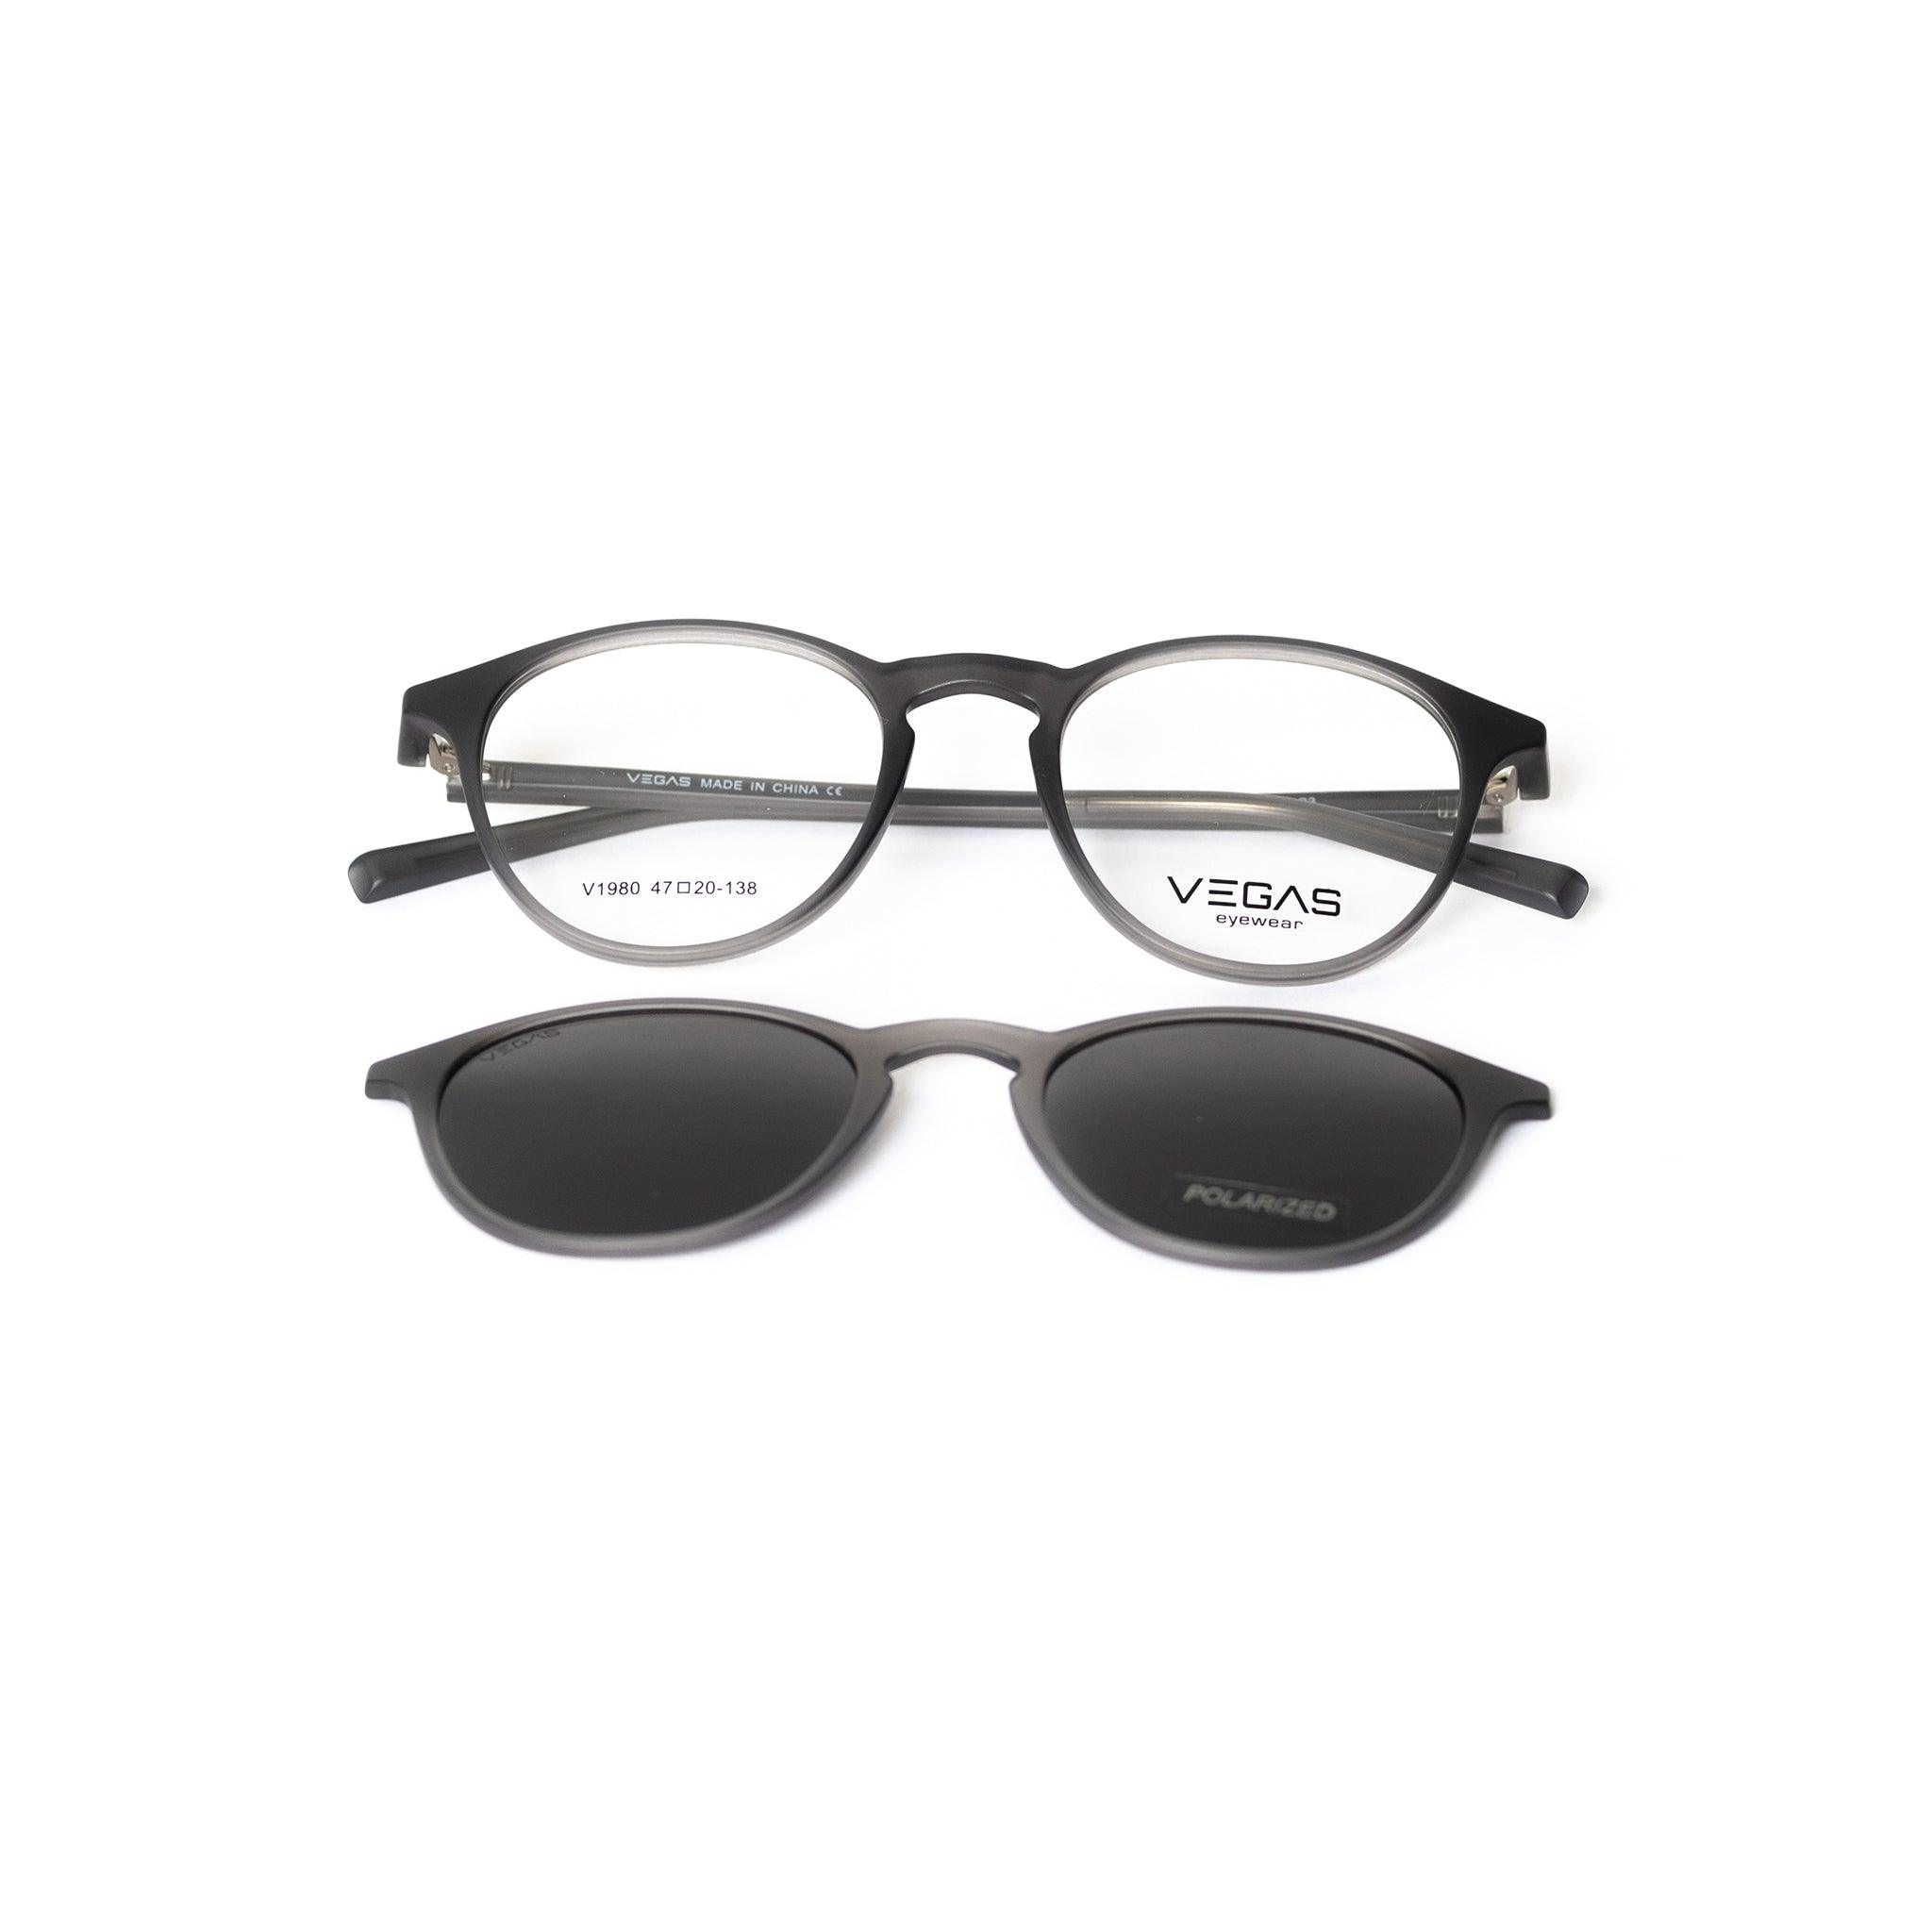 VEGAS V1980 - COC Eyewear